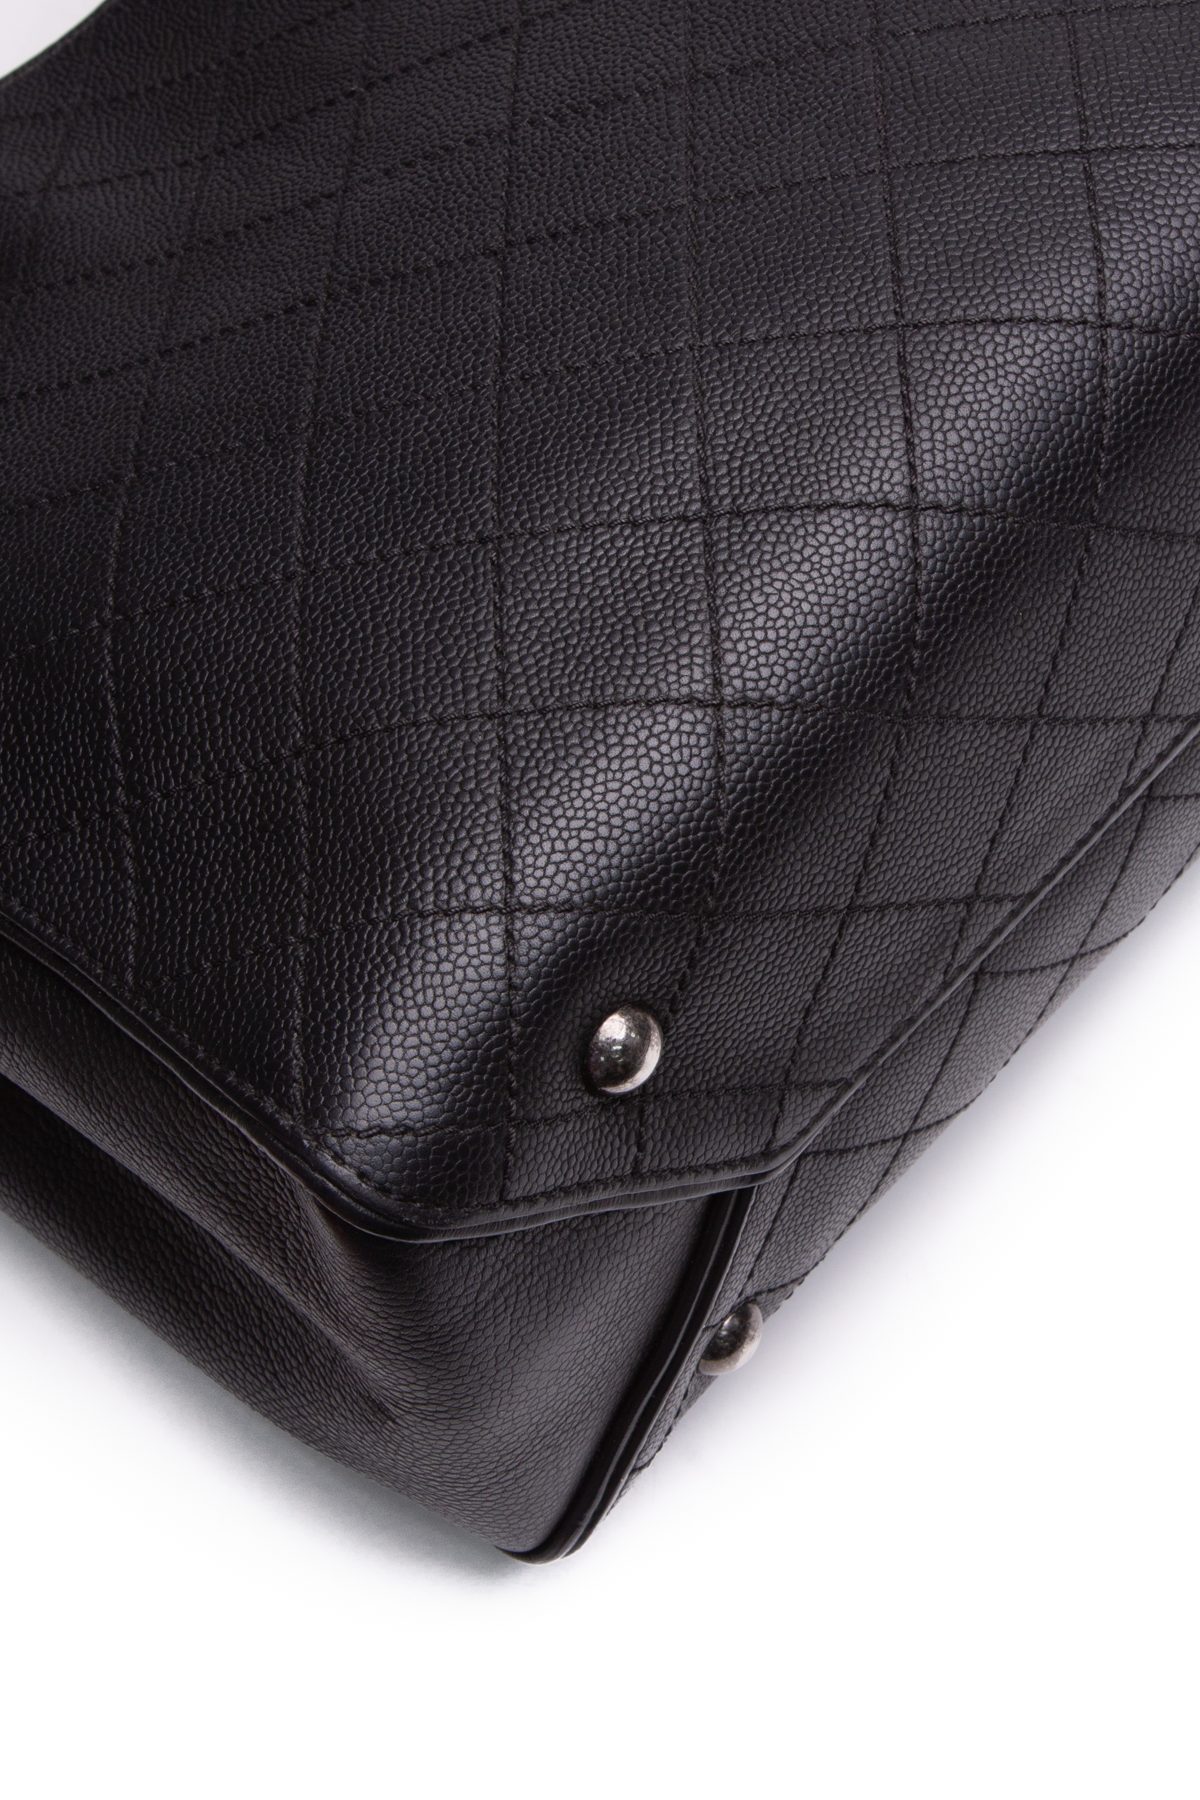 chanel quilted shoulder bag vintage leather